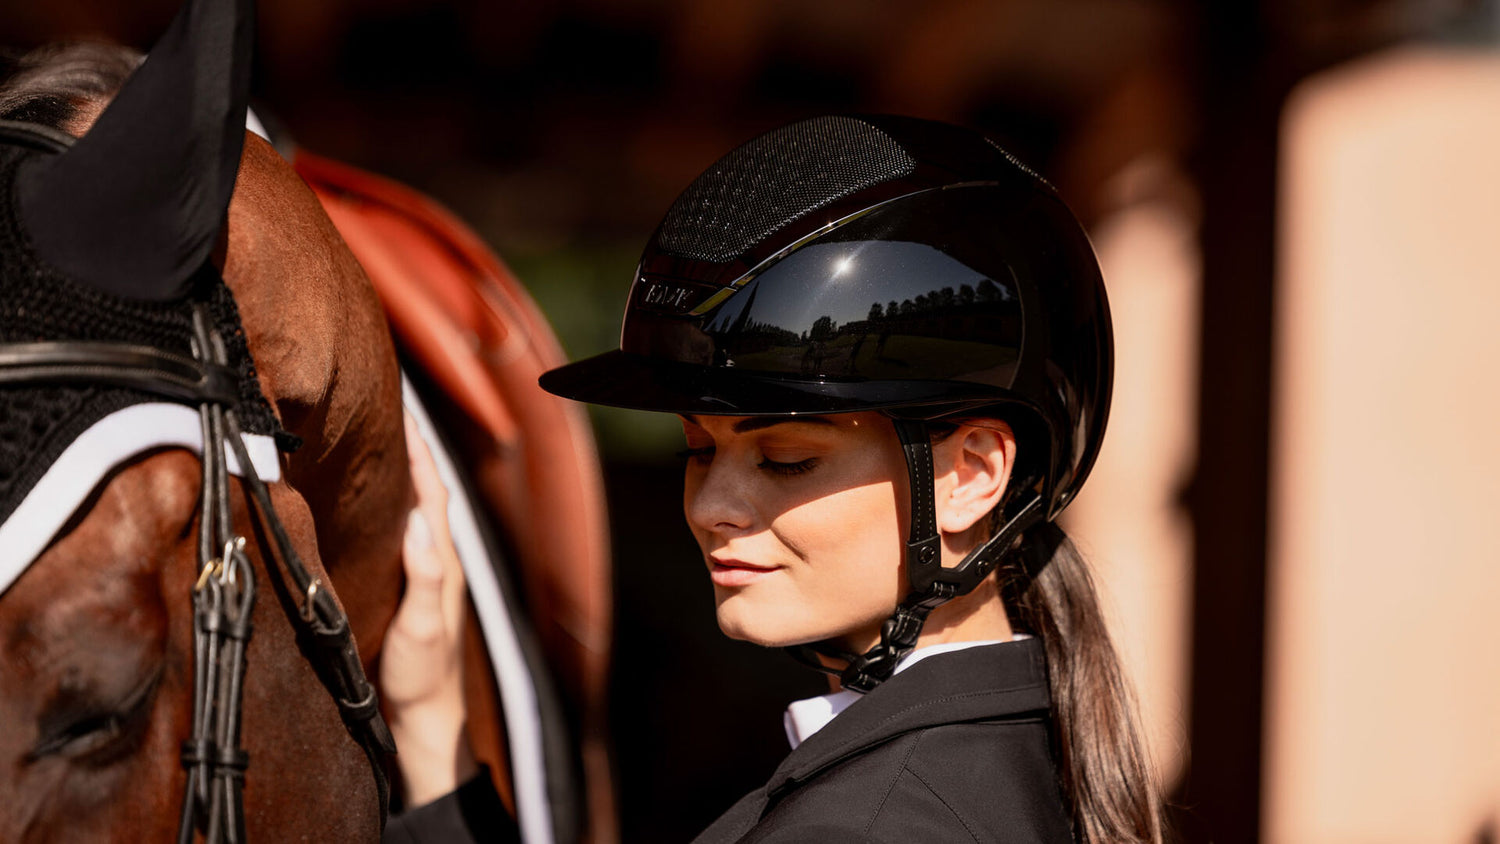 Kask equestrian helmet with wide brim